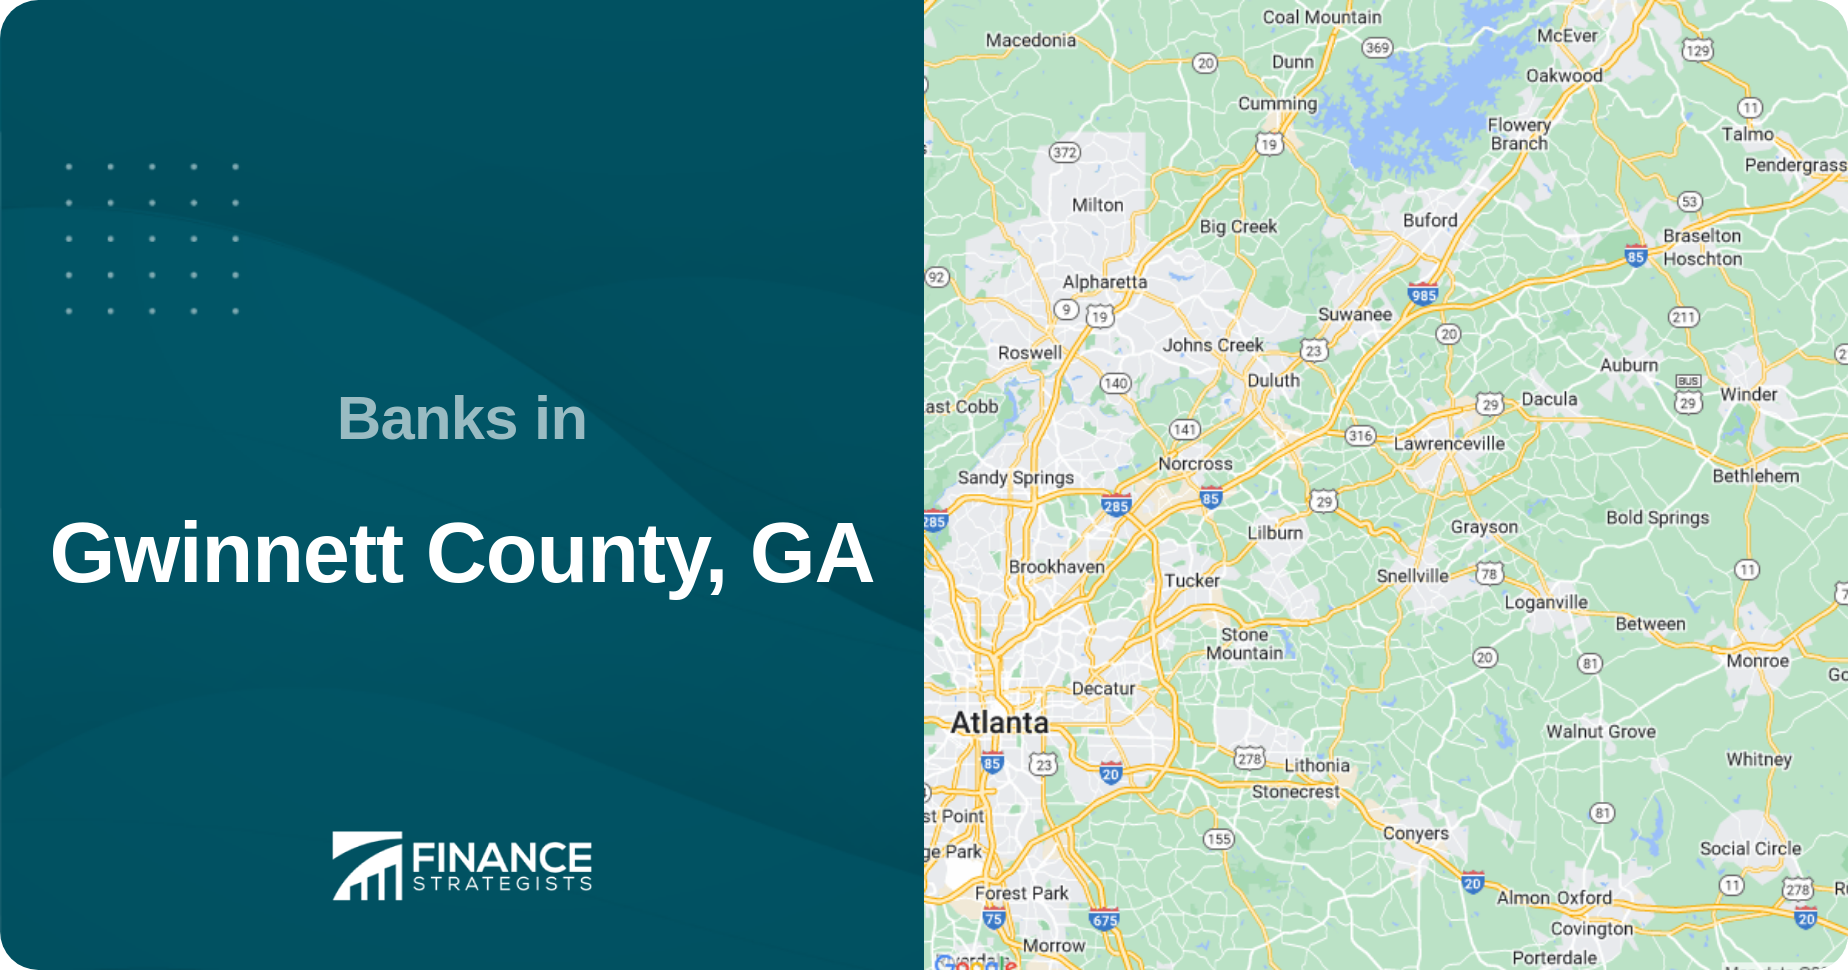 Banks in Gwinnett County, GA